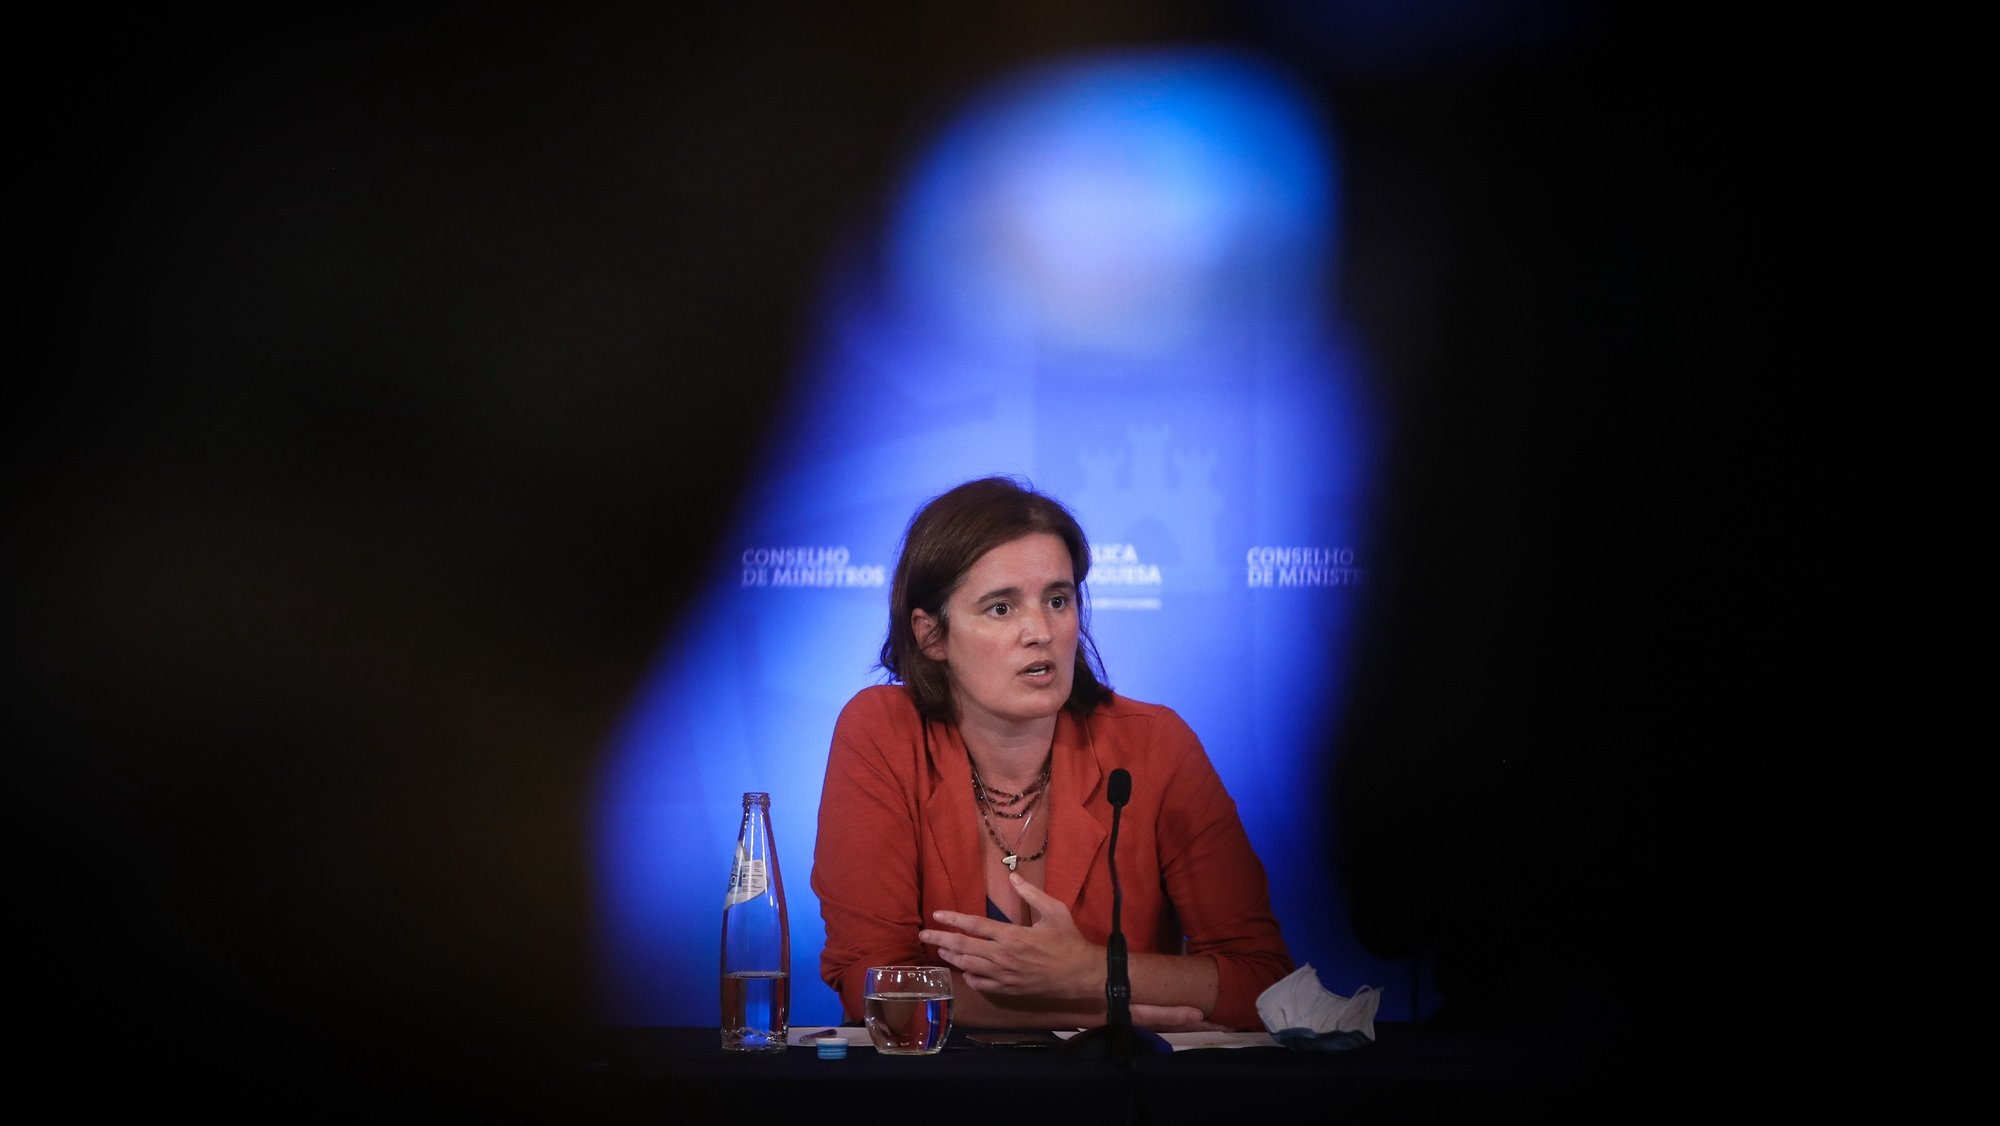 A ministra de Estado e da Presidência, Mariana Vieira da Silva, fala aos jornalistas durante a conferência de imprensa no final da reunião do Conselho de Ministros, no Palácio da Ajuda, em Lisboa, 9 de setembro de 2021. MÁRIO CRUZ/LUSA